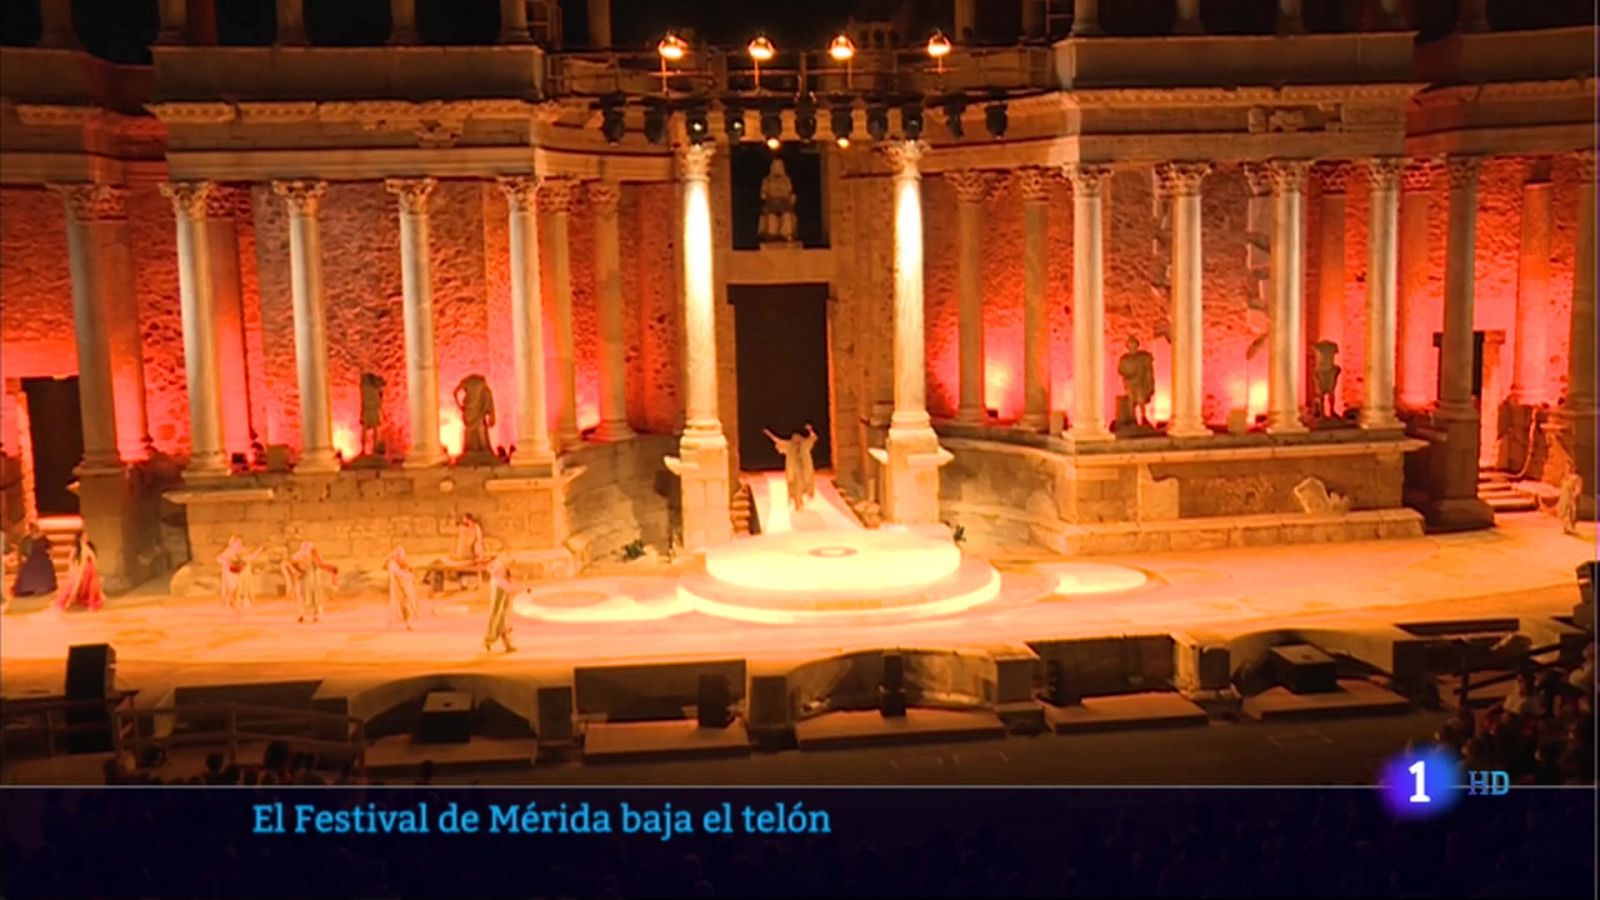 El Festival de Mérida baja el telón